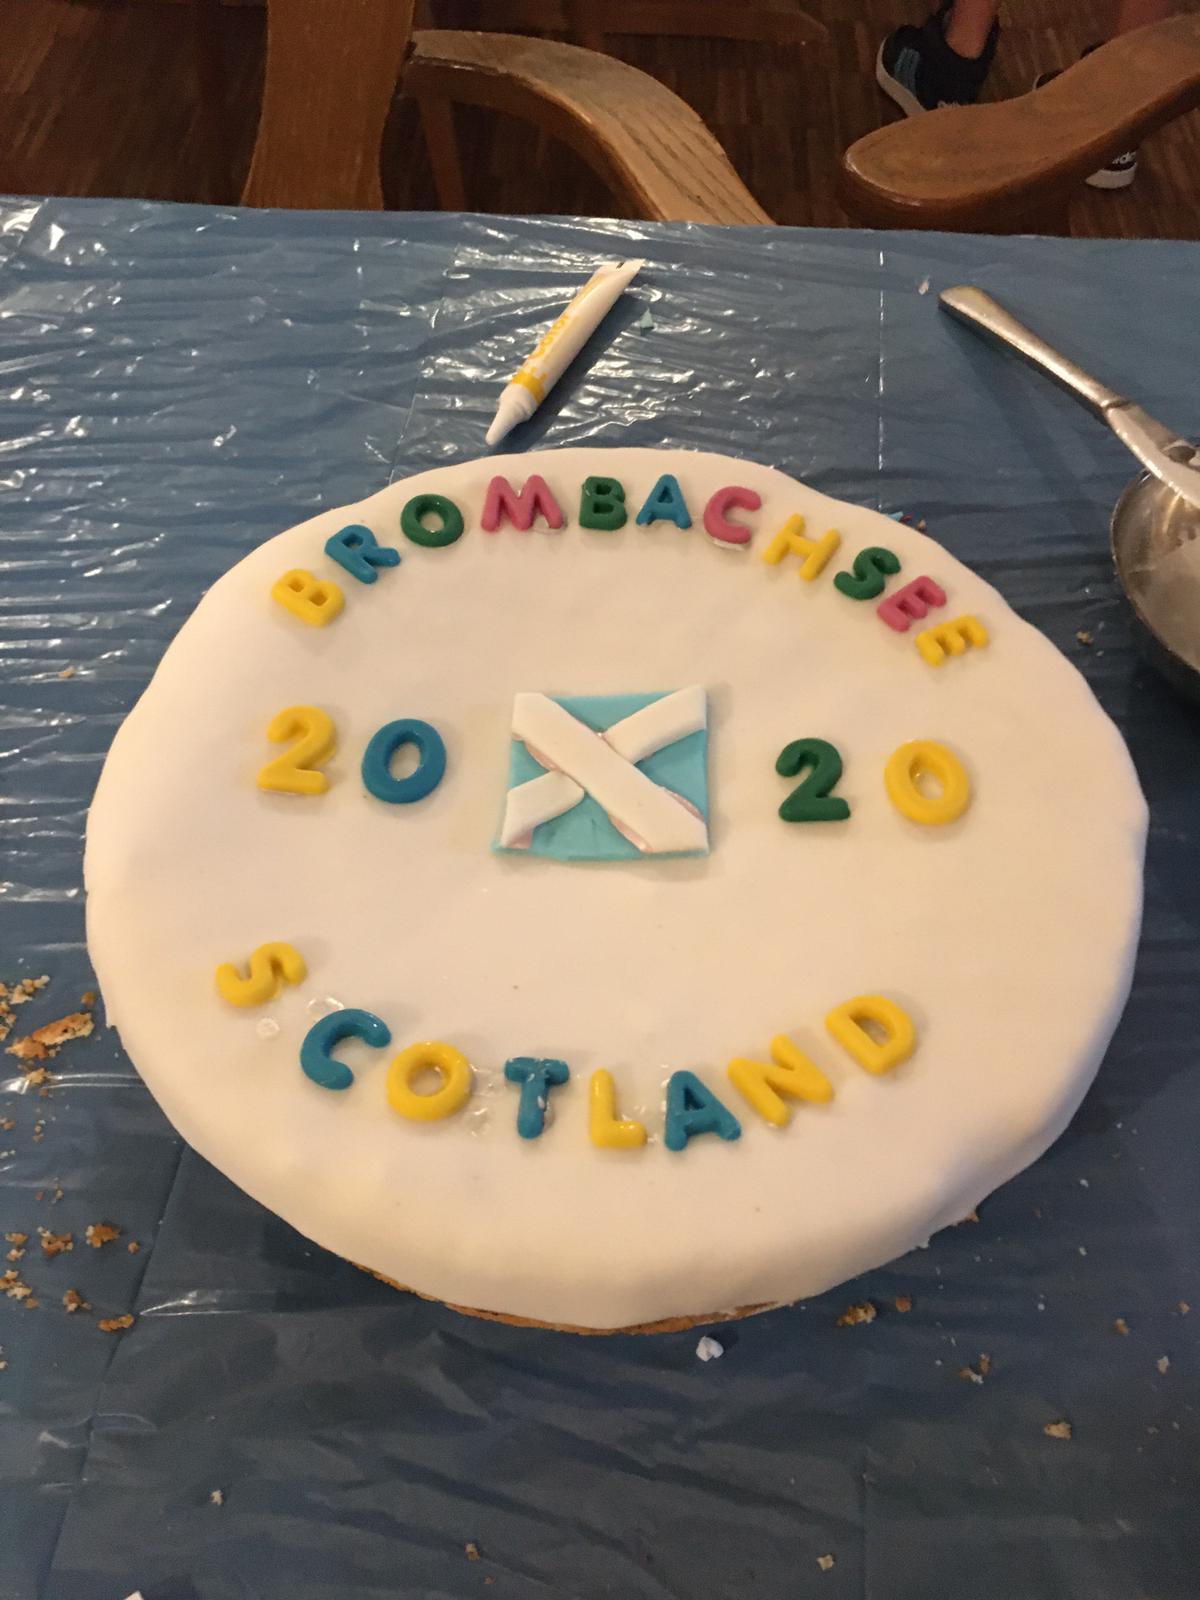 Ein Kuchen, auf dem Brombachsee Schottland steht